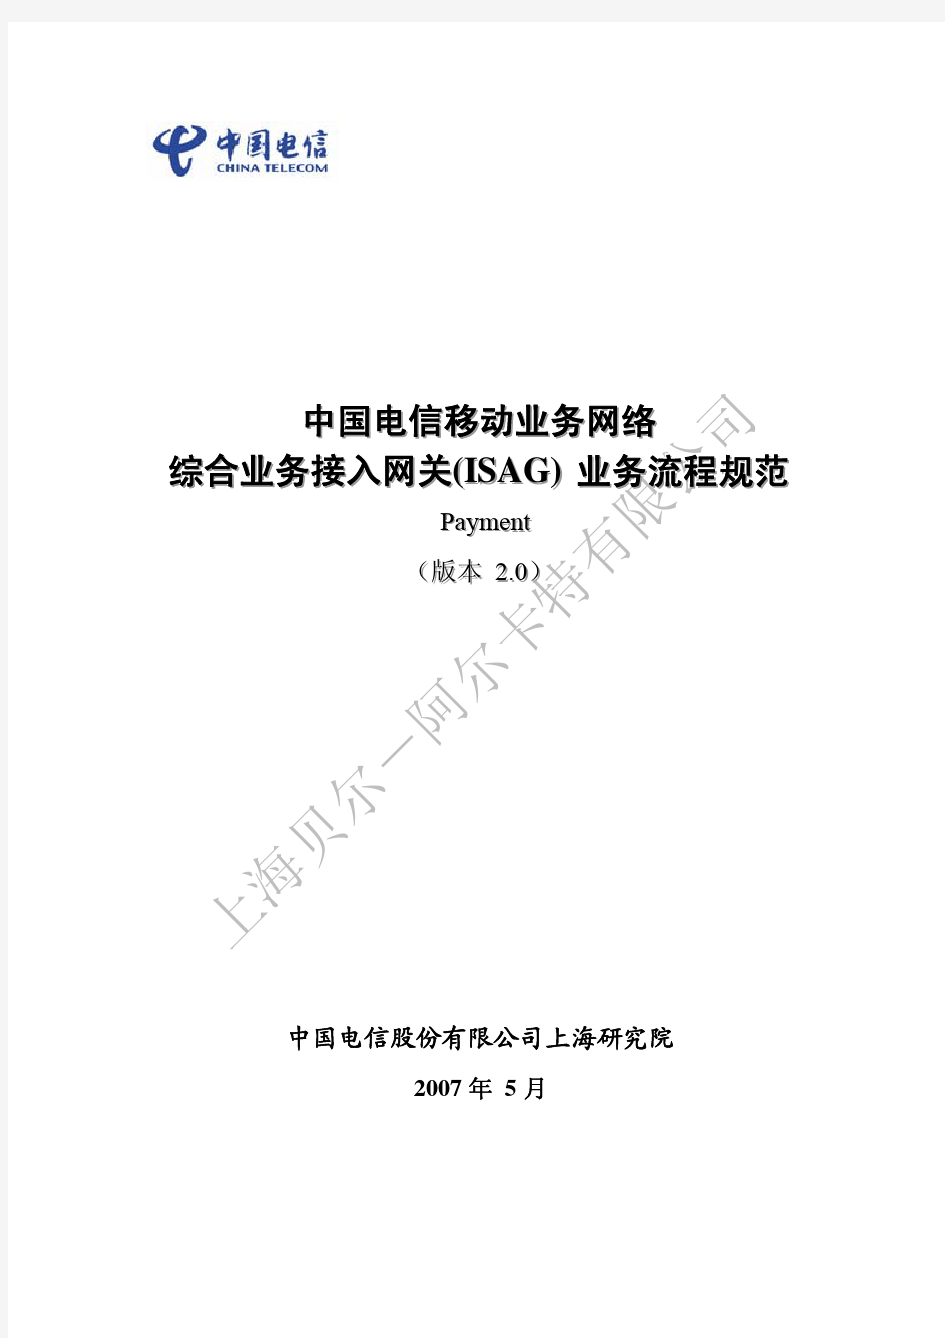 中国电信综合业务接入网关_ISAG_业务流程规范12—Payment V2.0